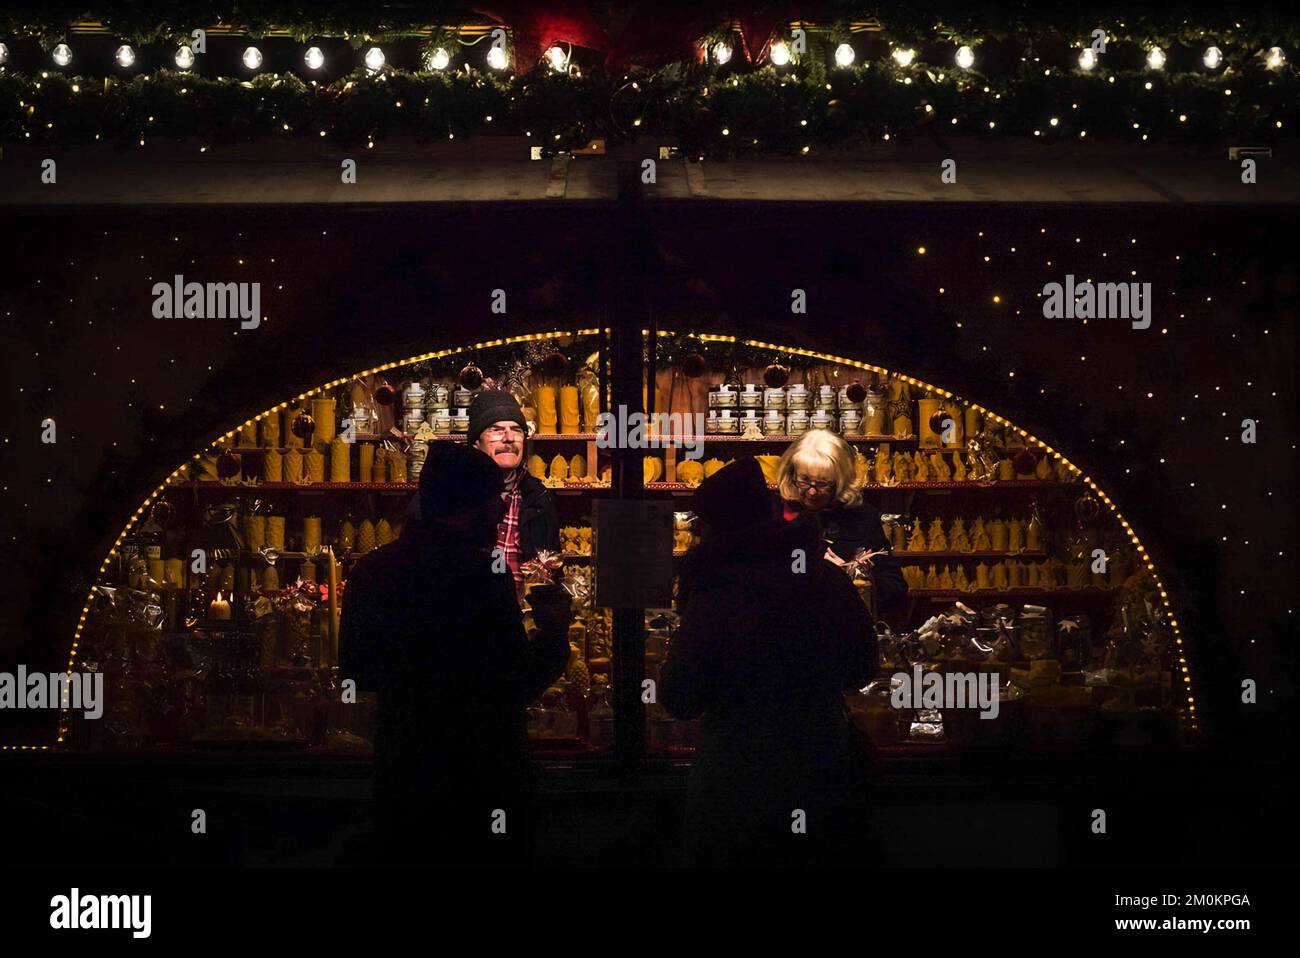 Zwei Silhouetten der Kunden stehen in der Nähe eines beleuchteten Kiosks auf einem Weihnachtsmarkt in München, Deutschland, bei Nacht mit zwei Verkäufern an der Theke. Stockfoto